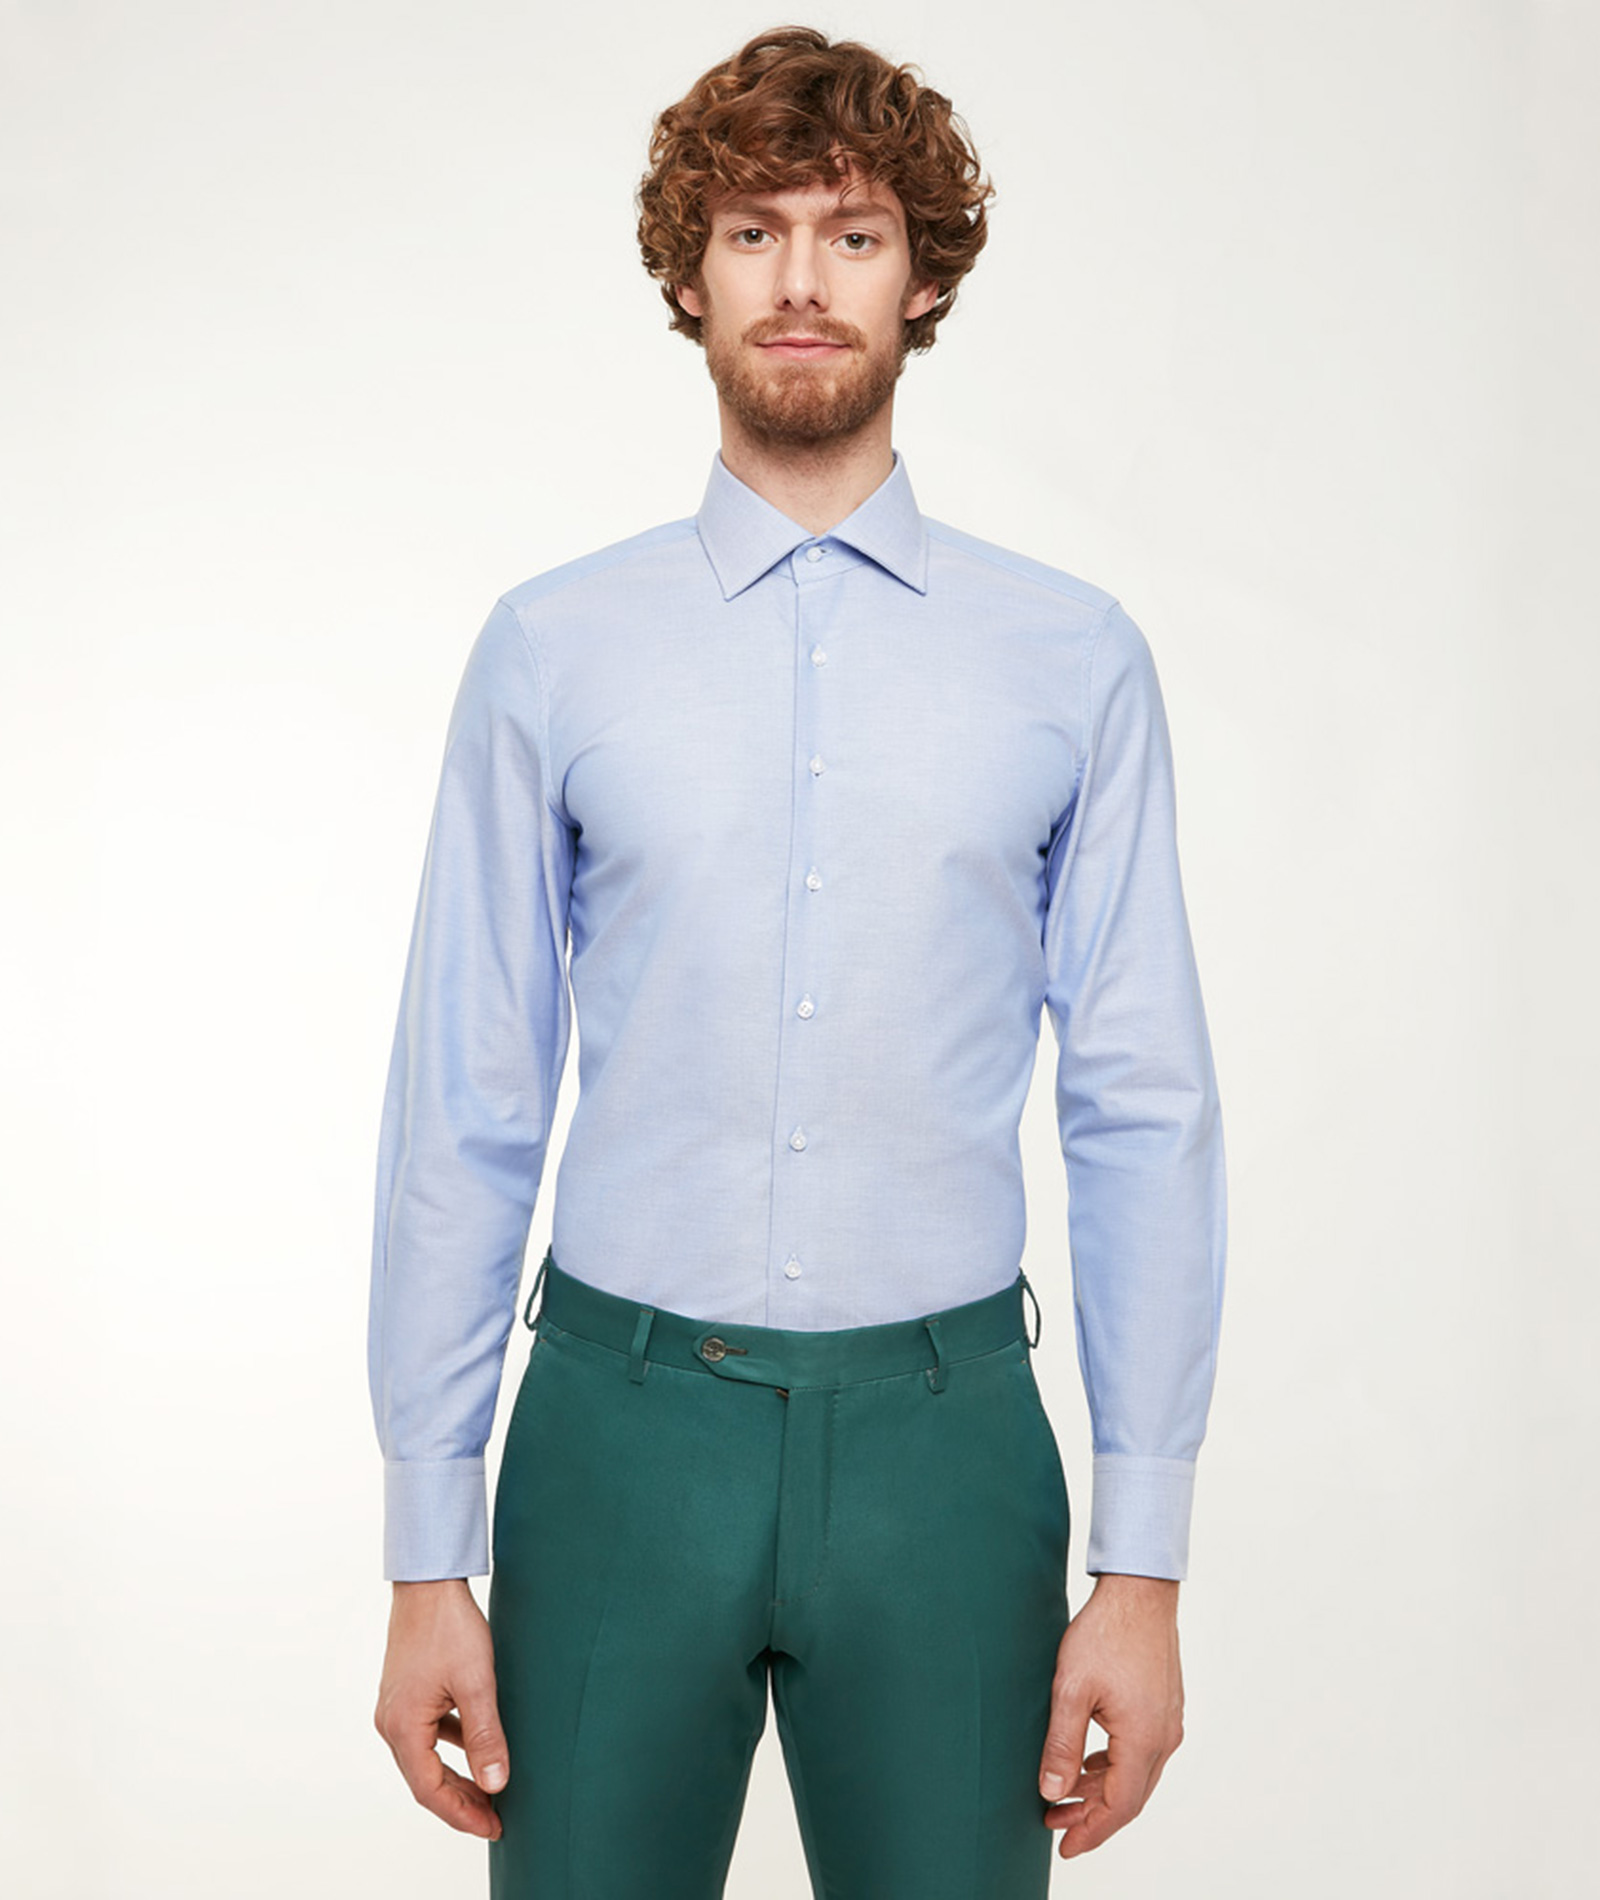 Image of Camicia da uomo su misura, Alfatex, Azzurra in Oxford di Cotone, Quattro Stagioni | Lanieri